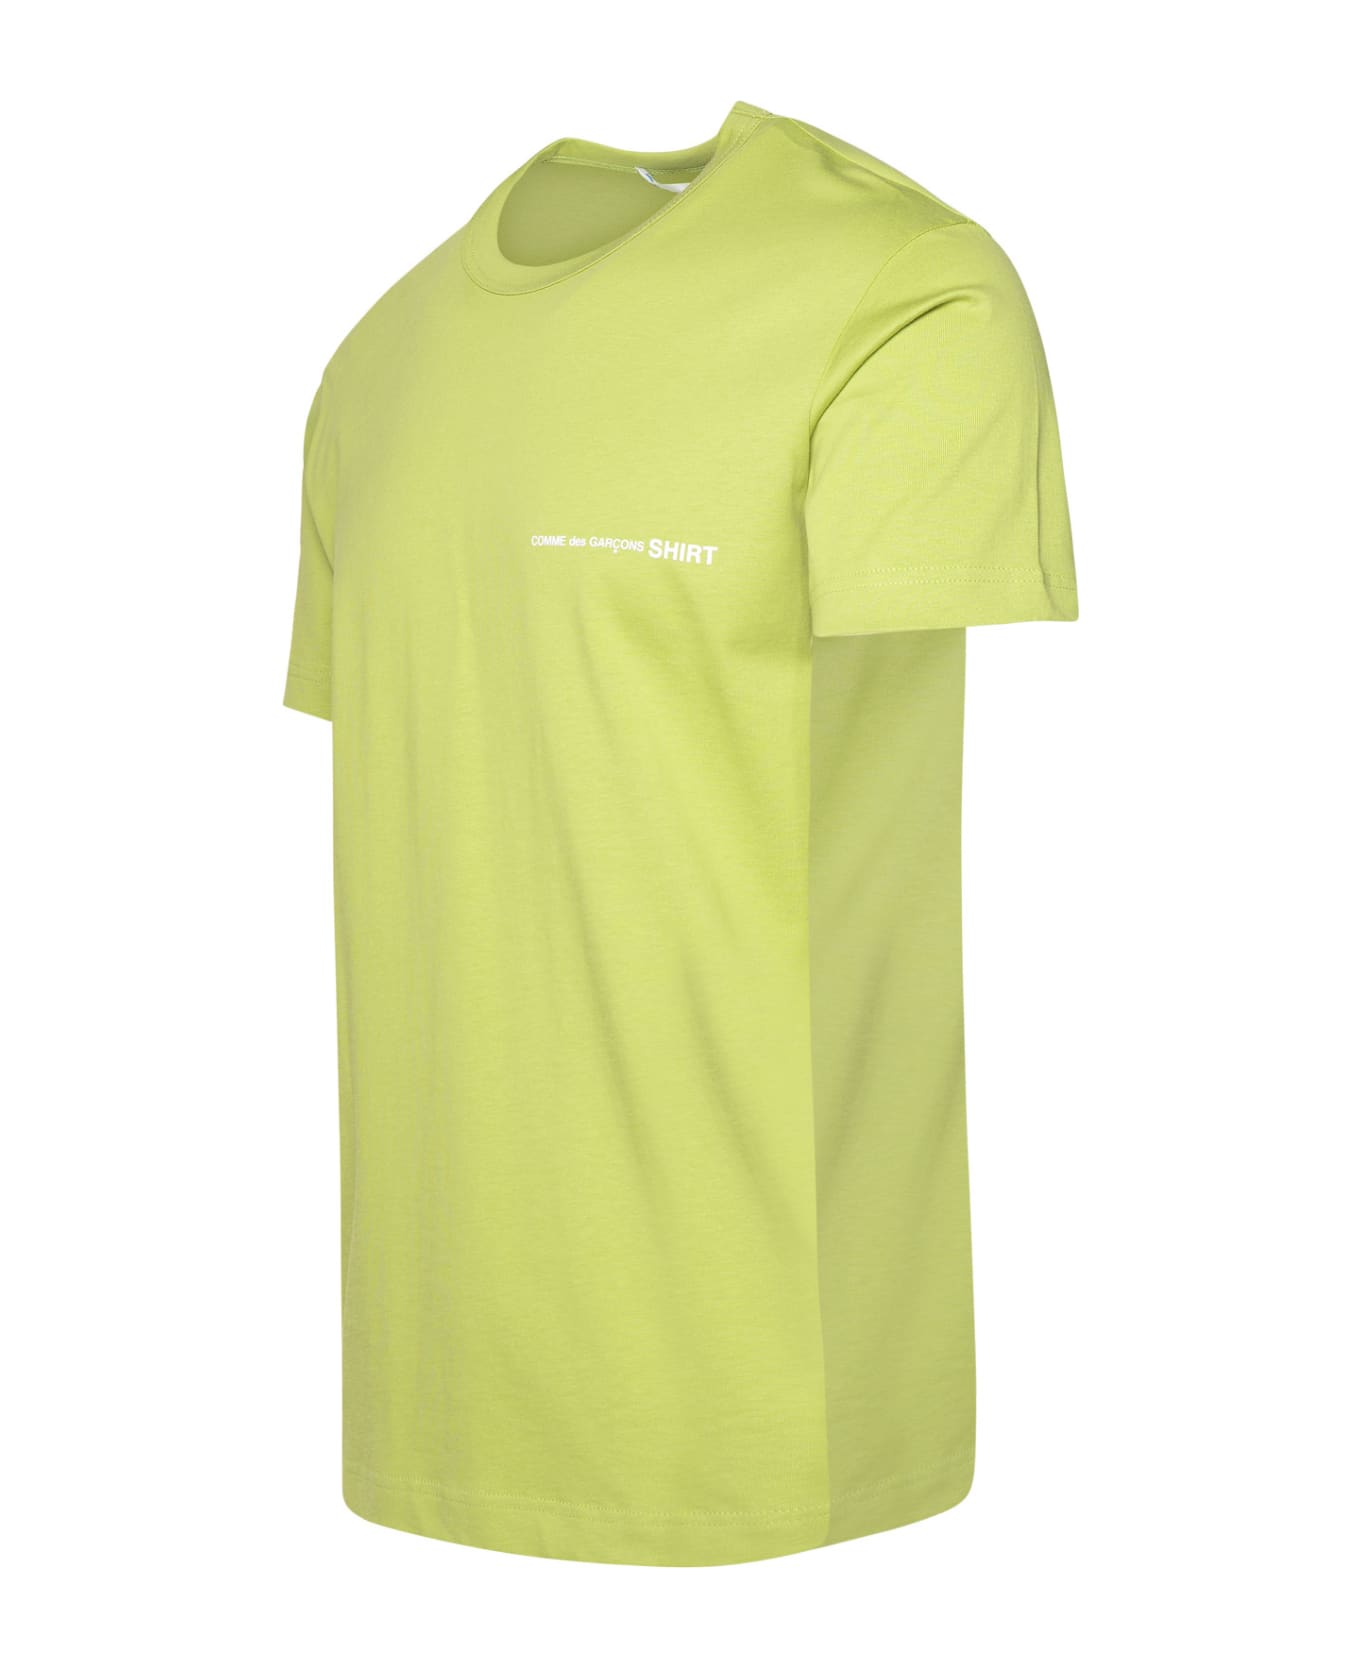 Comme des Garçons Shirt Green Cotton T-shirt - Green